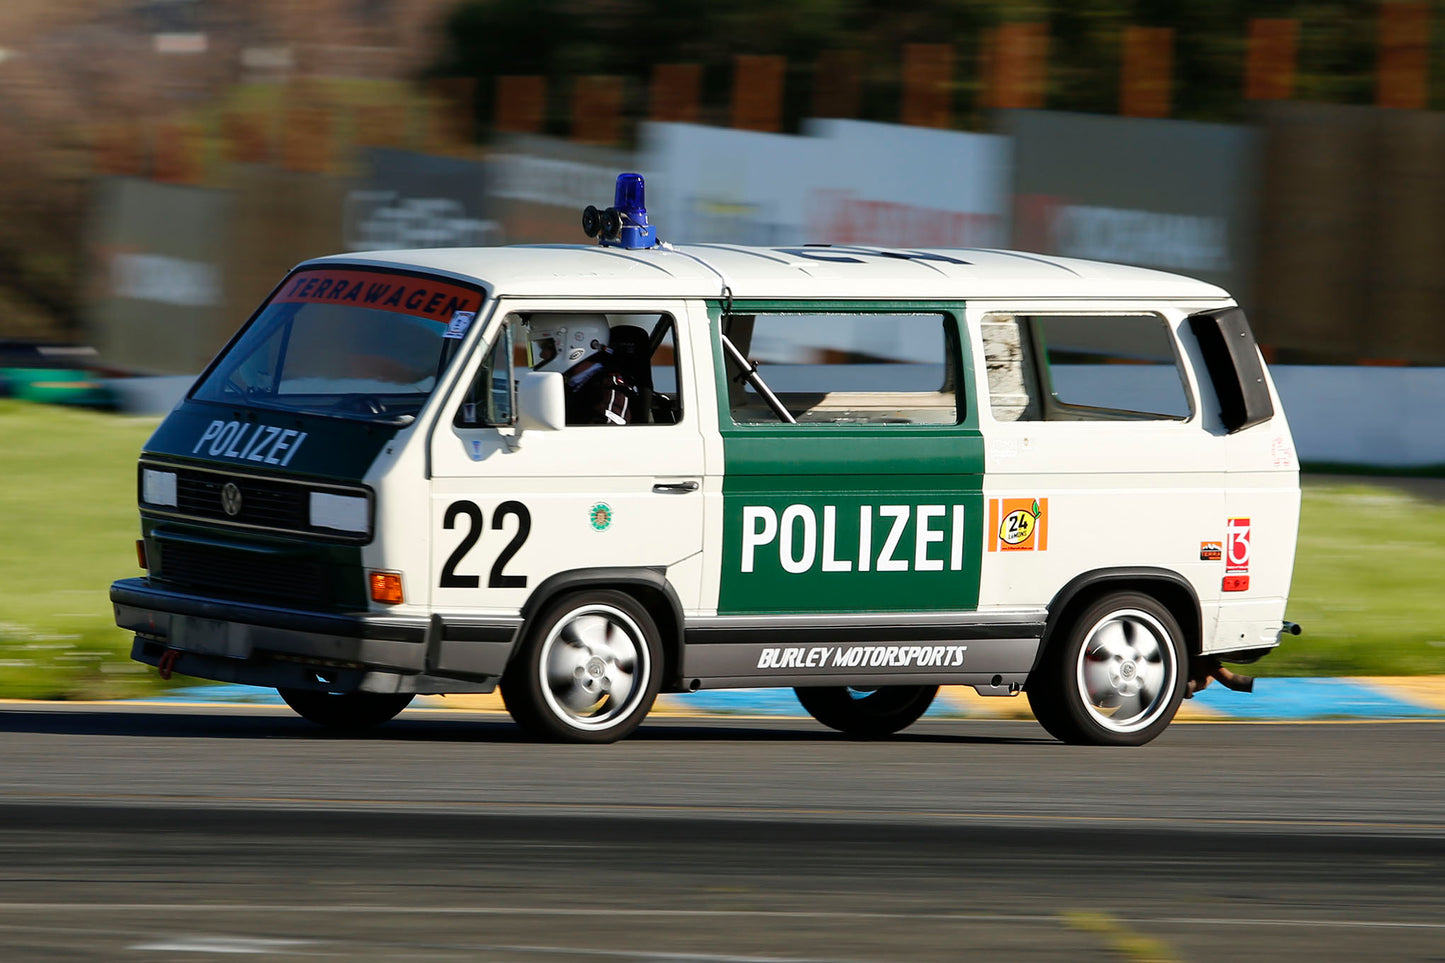 Terrawagen Team Polizei sticker